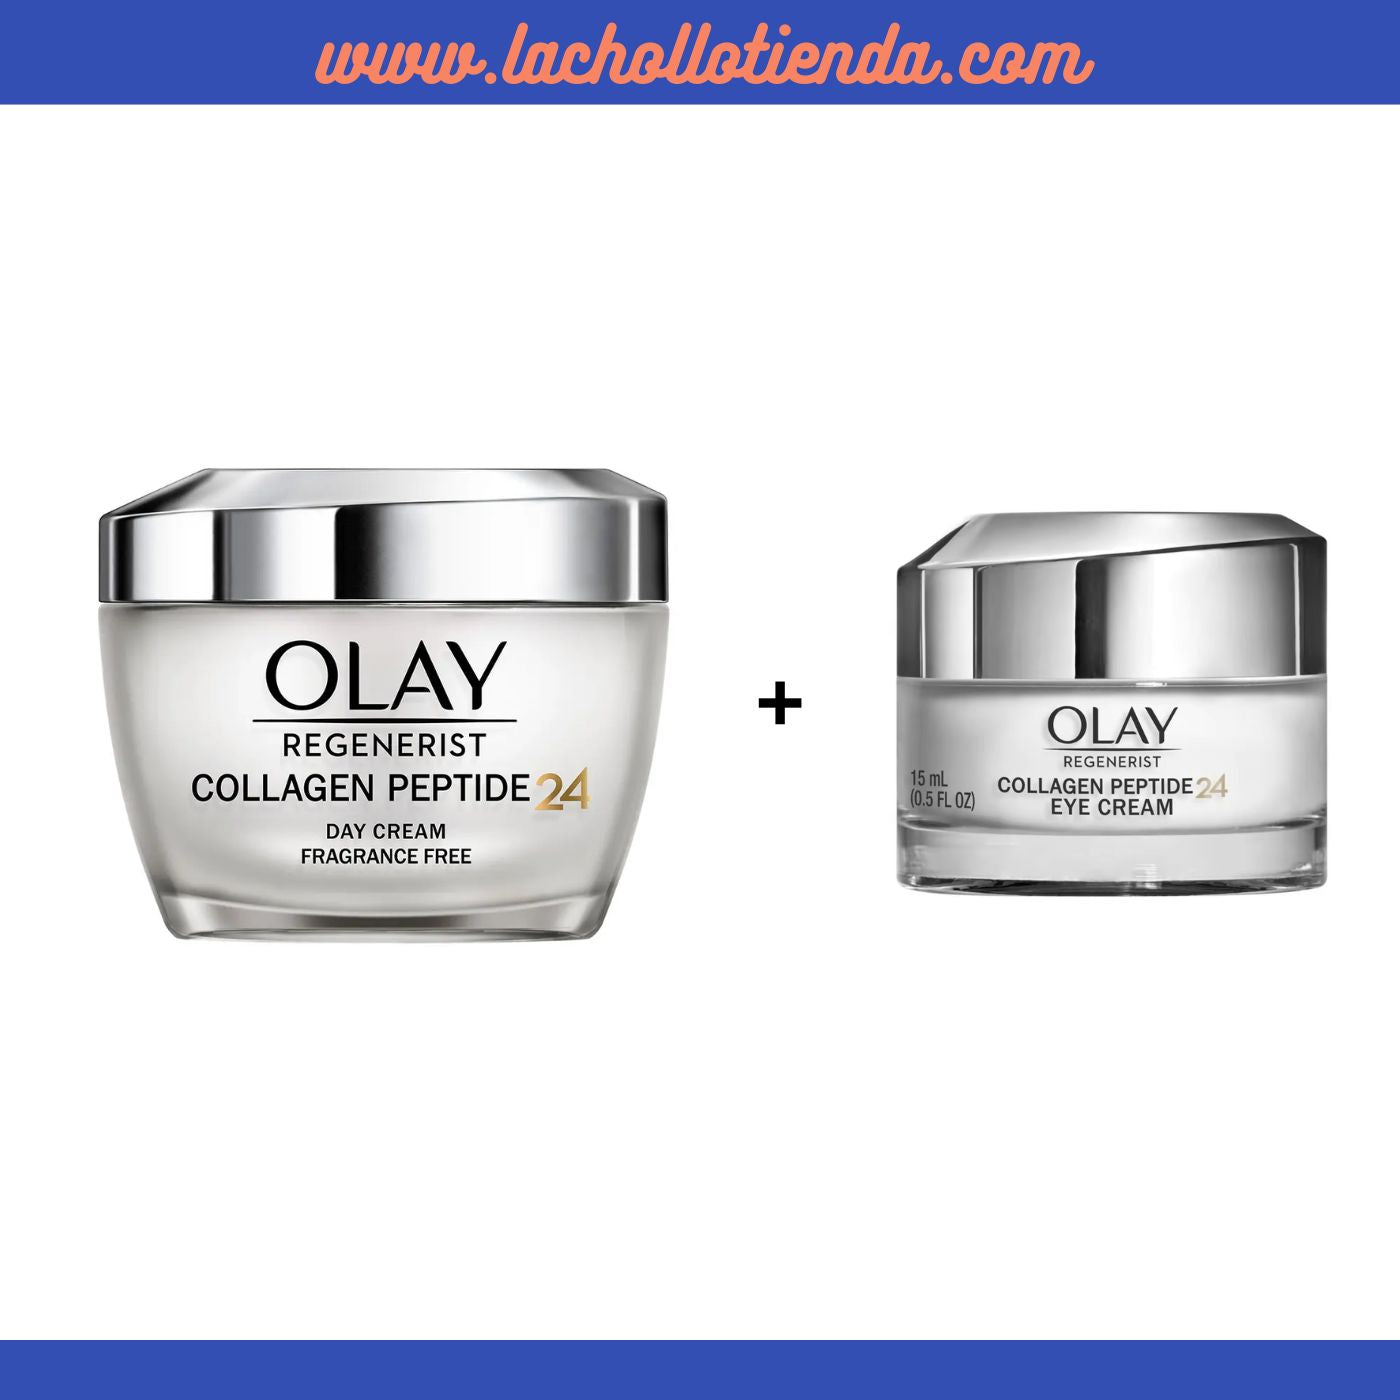 Olay - Collagen Peptide 24 - Crema de Día 50ml + OLAY - Contorno De Ojos Collagen Peptide24 Sin perfume 15ml.